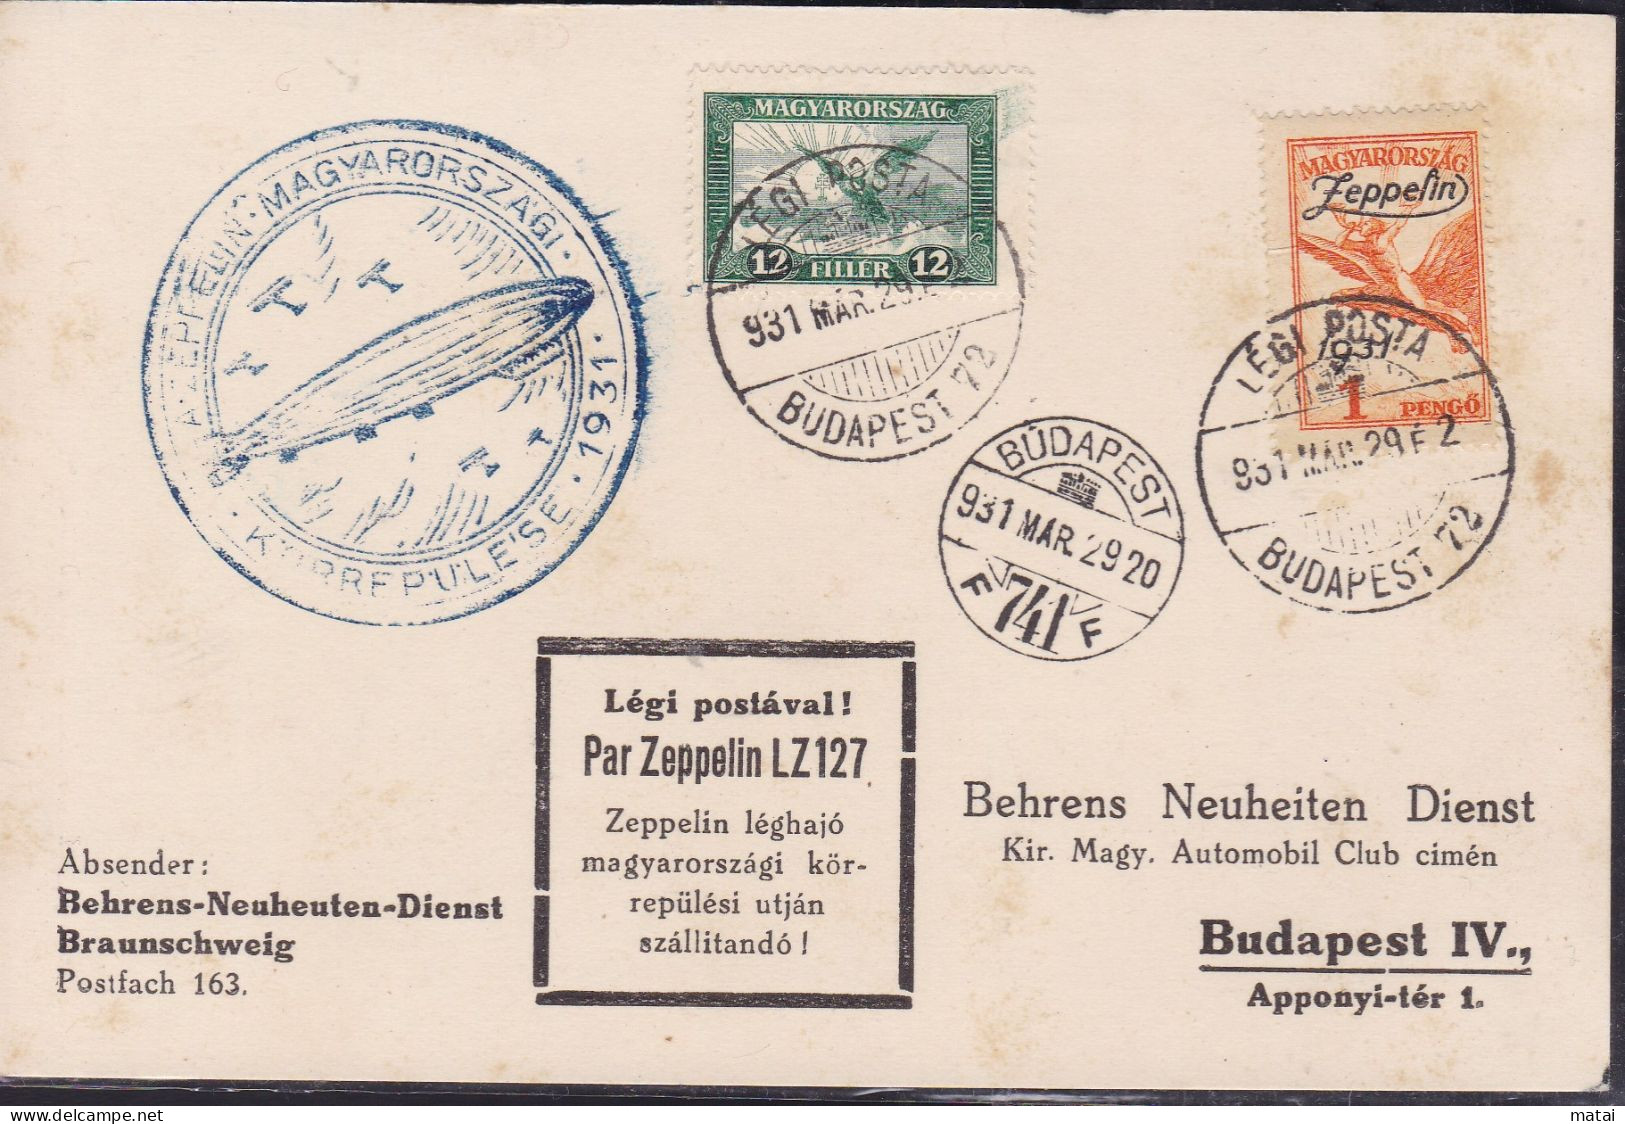 HUNGARY 1929 PAR ZEPPELIN LZ 127 - Briefe U. Dokumente